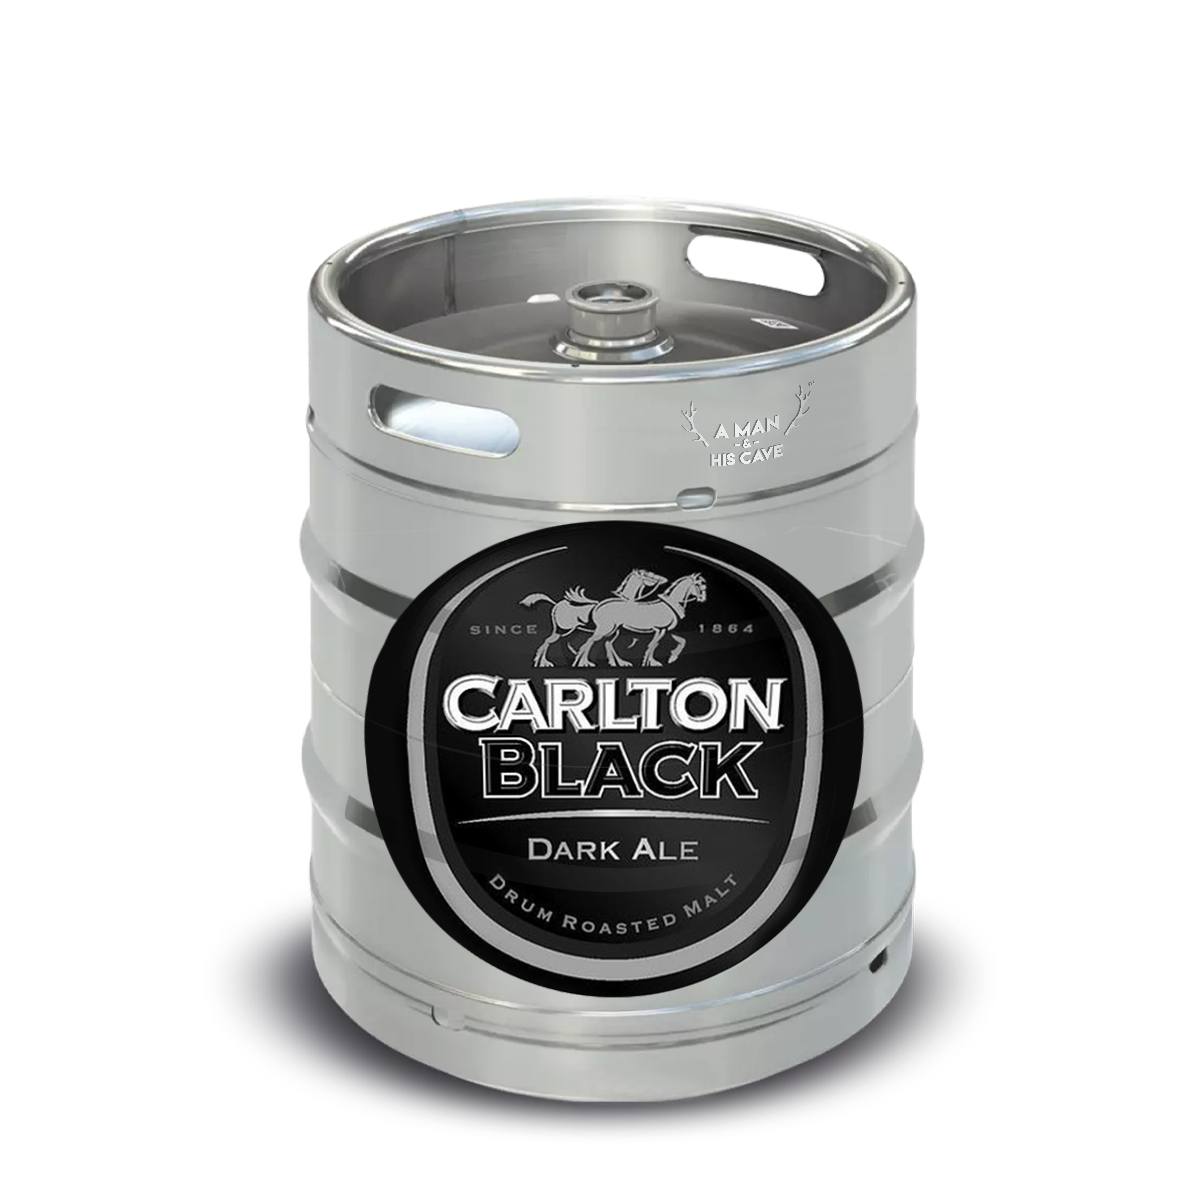 Beer Keg - Carlton Black Dark Ale 50lt Commercial Keg 4.4% D-Type Coupler [NSW]